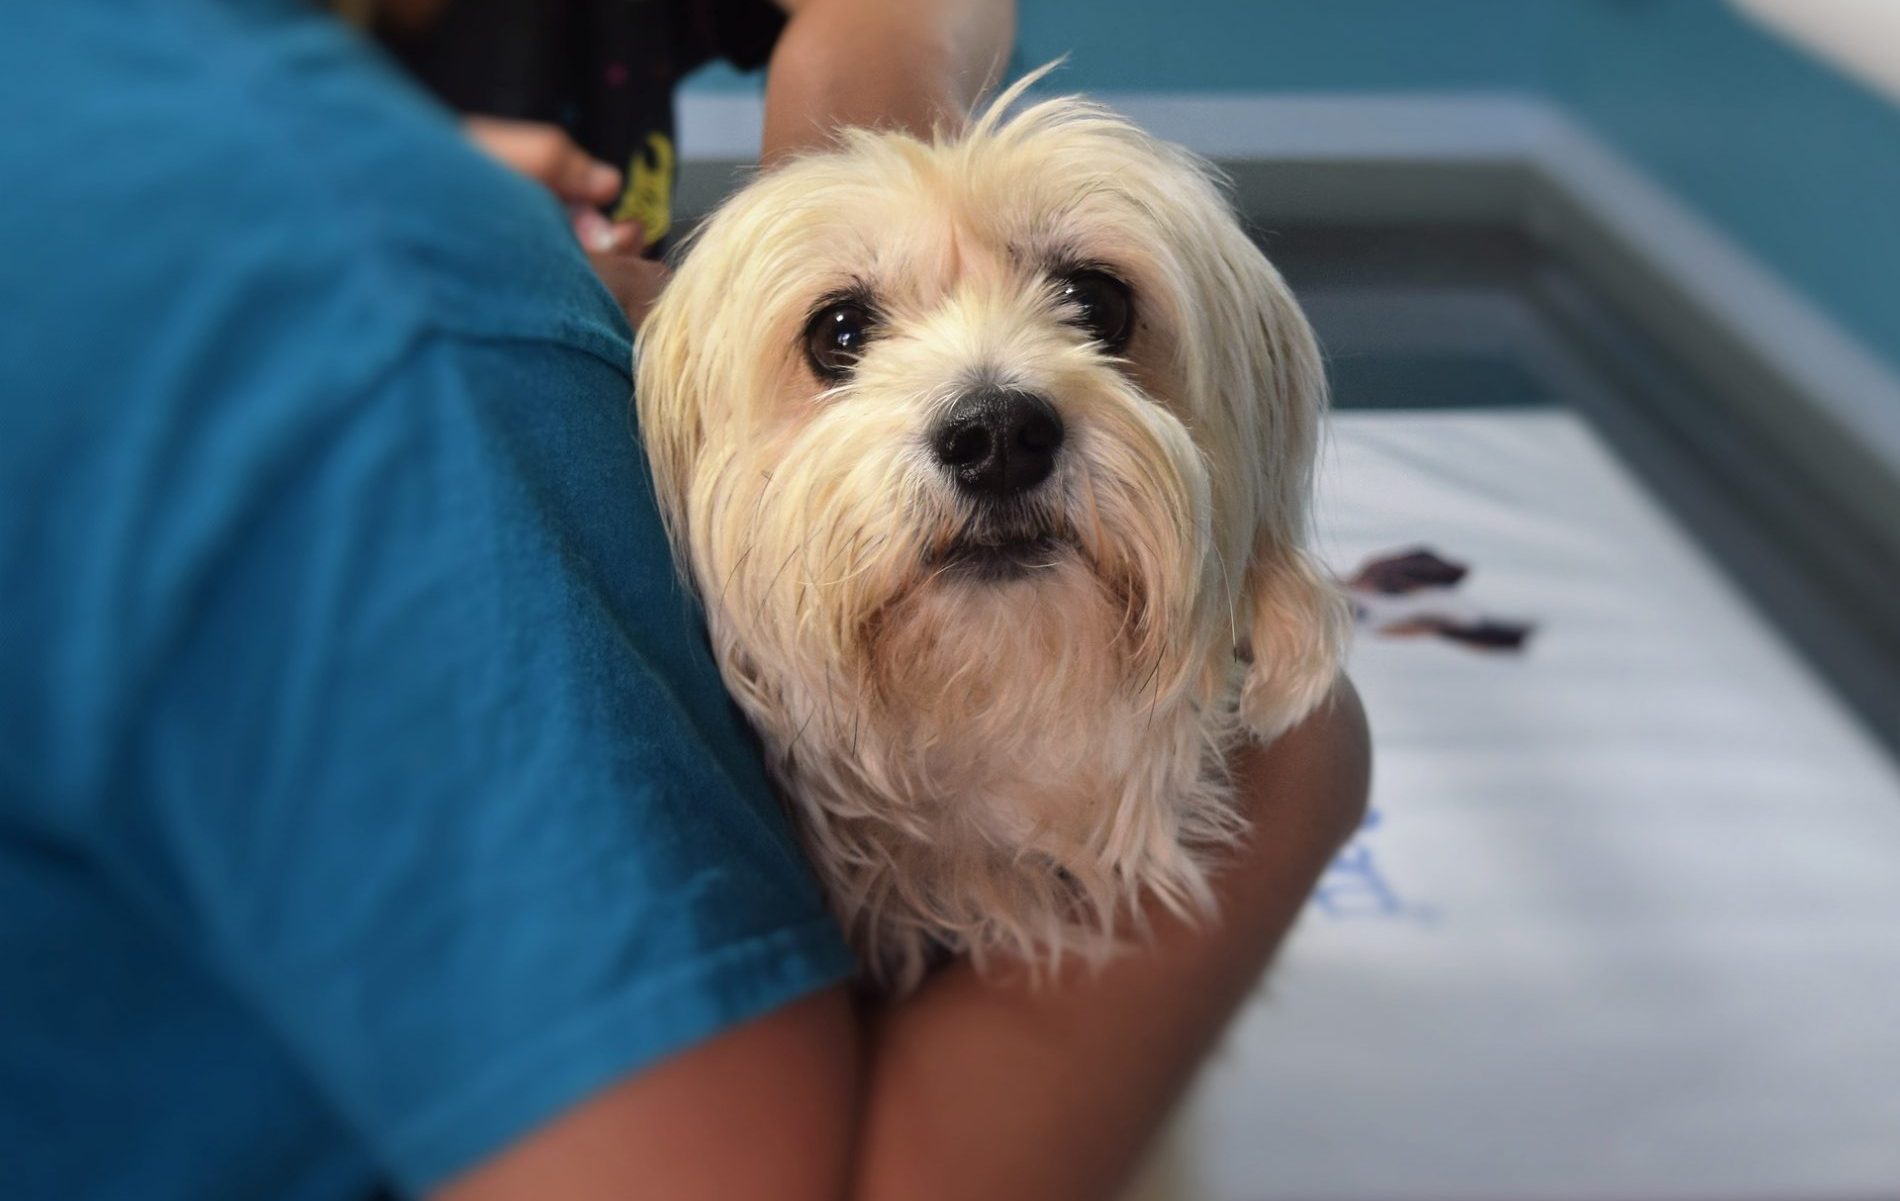 Giardiose beim Hund: Maltese beim Tierarzt